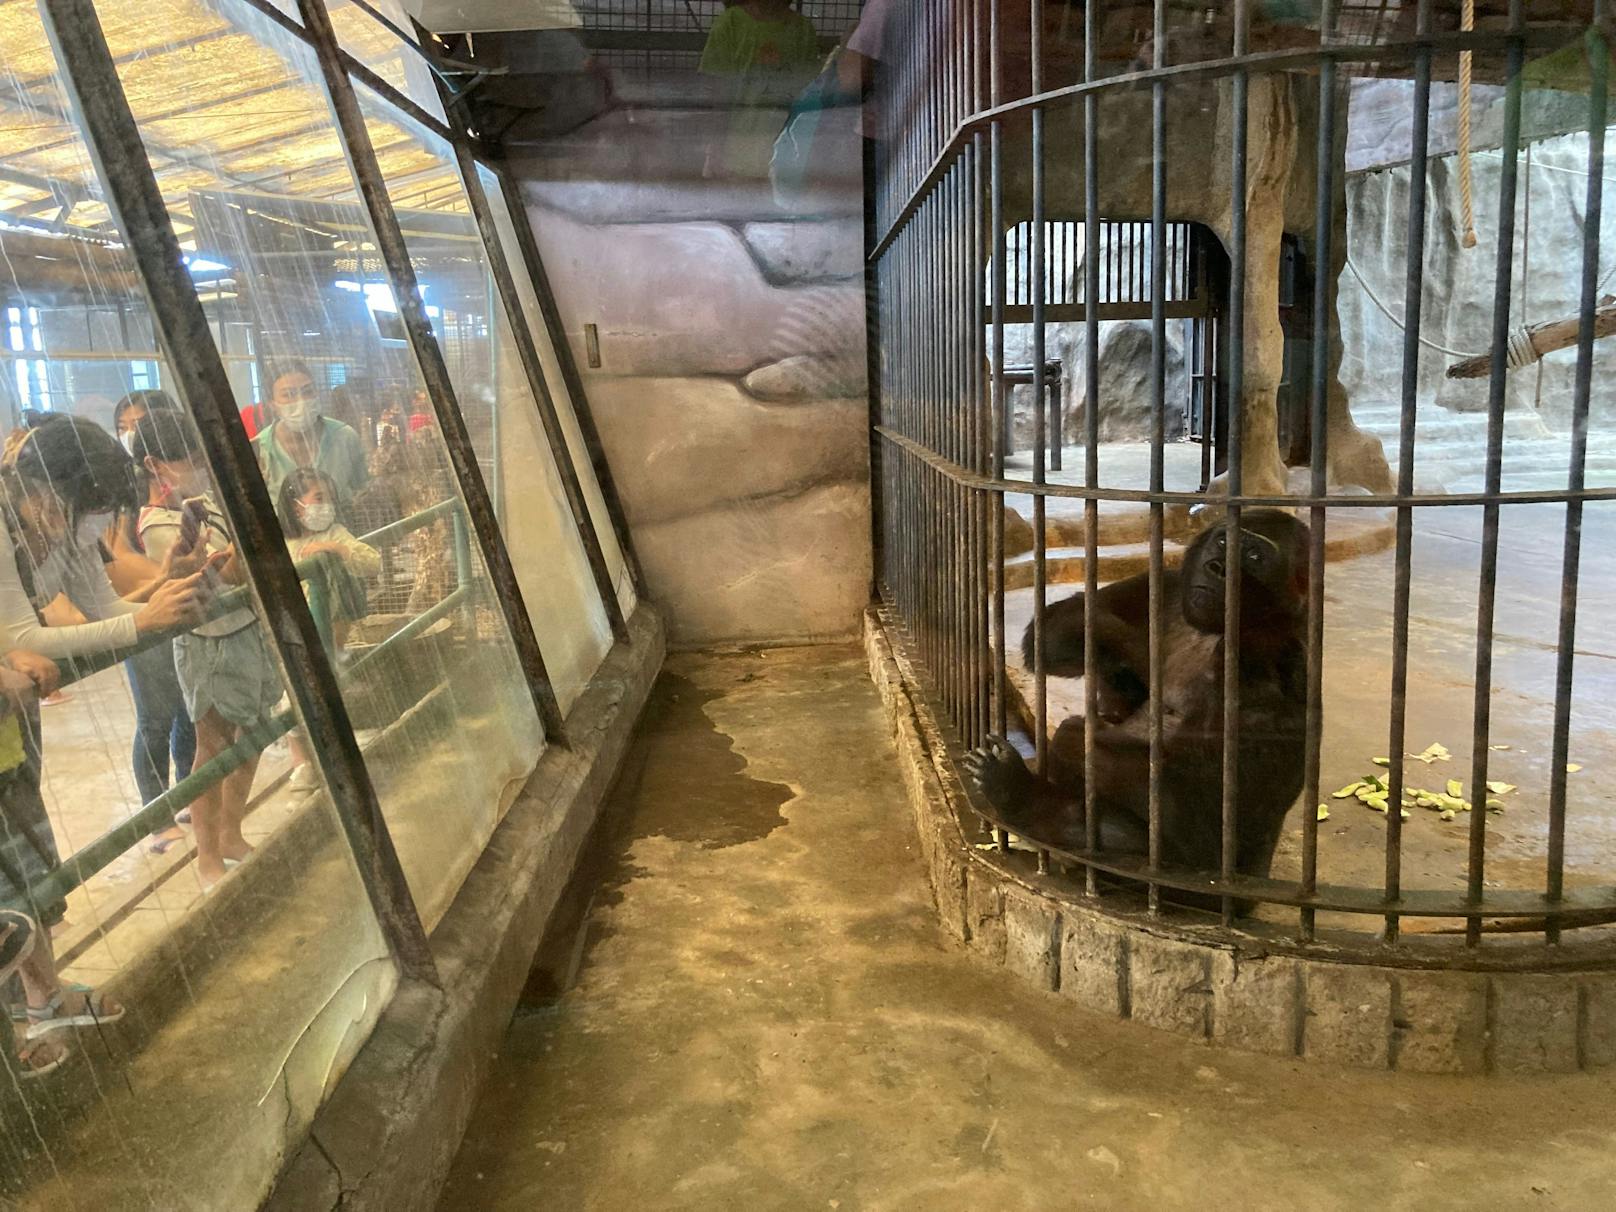 Die Thais mögen offenbar den "Hell-Zoo" und füttern noch immer täglich die Tiere durch die Gitterstäbe. Toll!